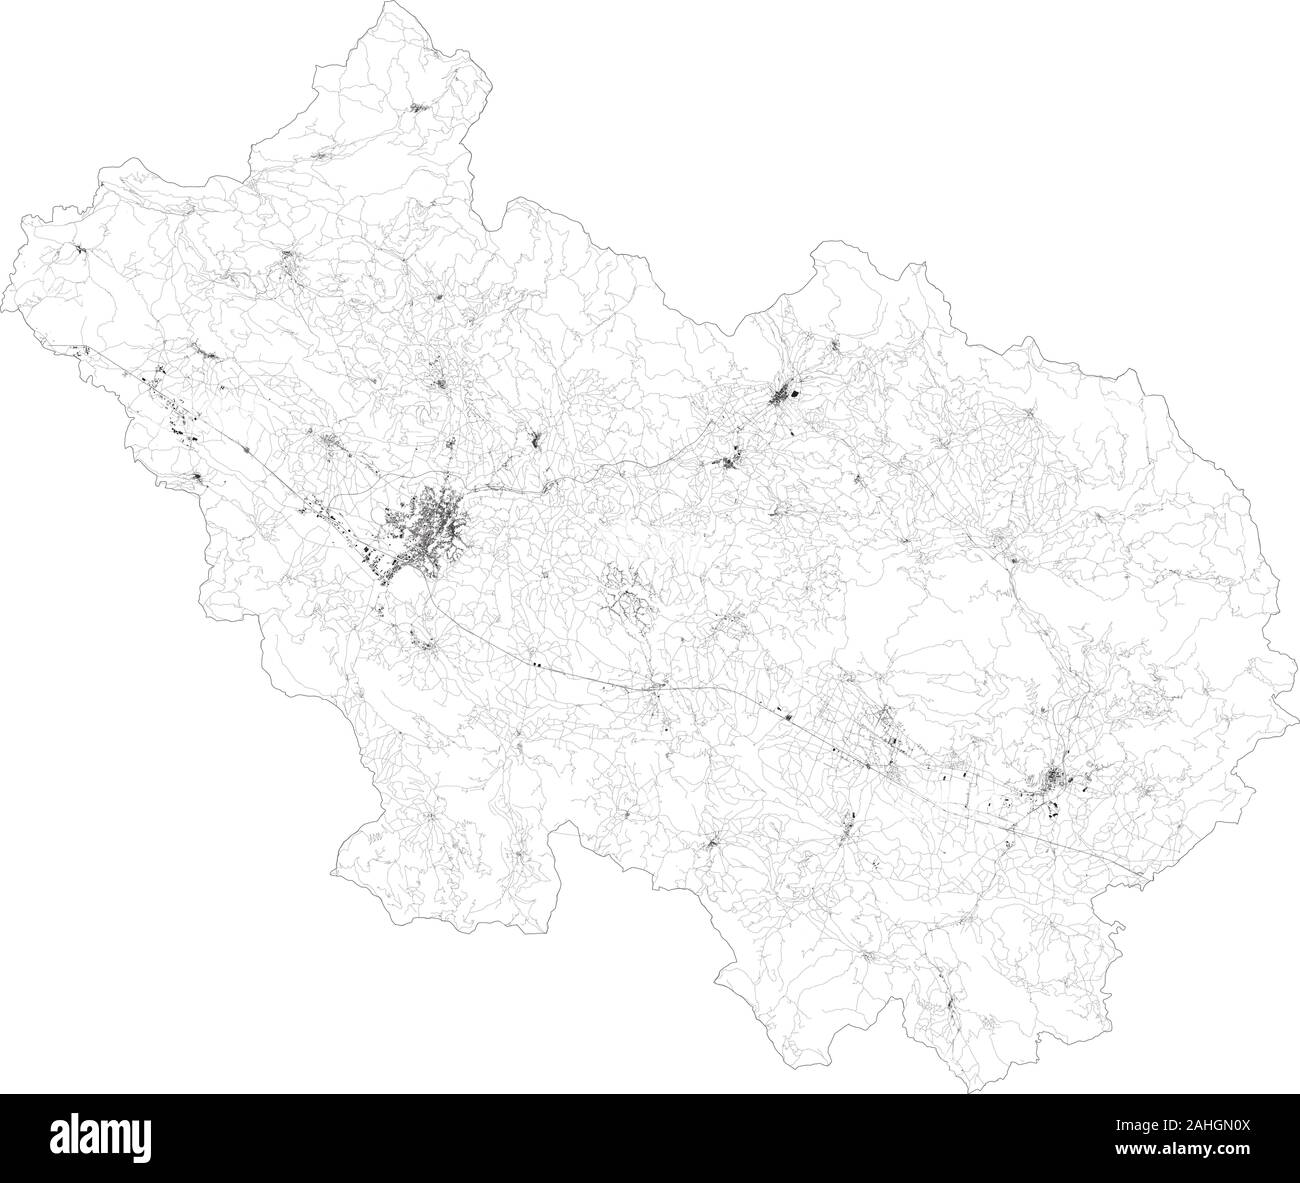 Sat-Karte der Provinz Frosinone, Städte und Straßen, Gebäude und Straßen der Umgebung. Region Latium, Italien. Karte Straßen Stock Vektor